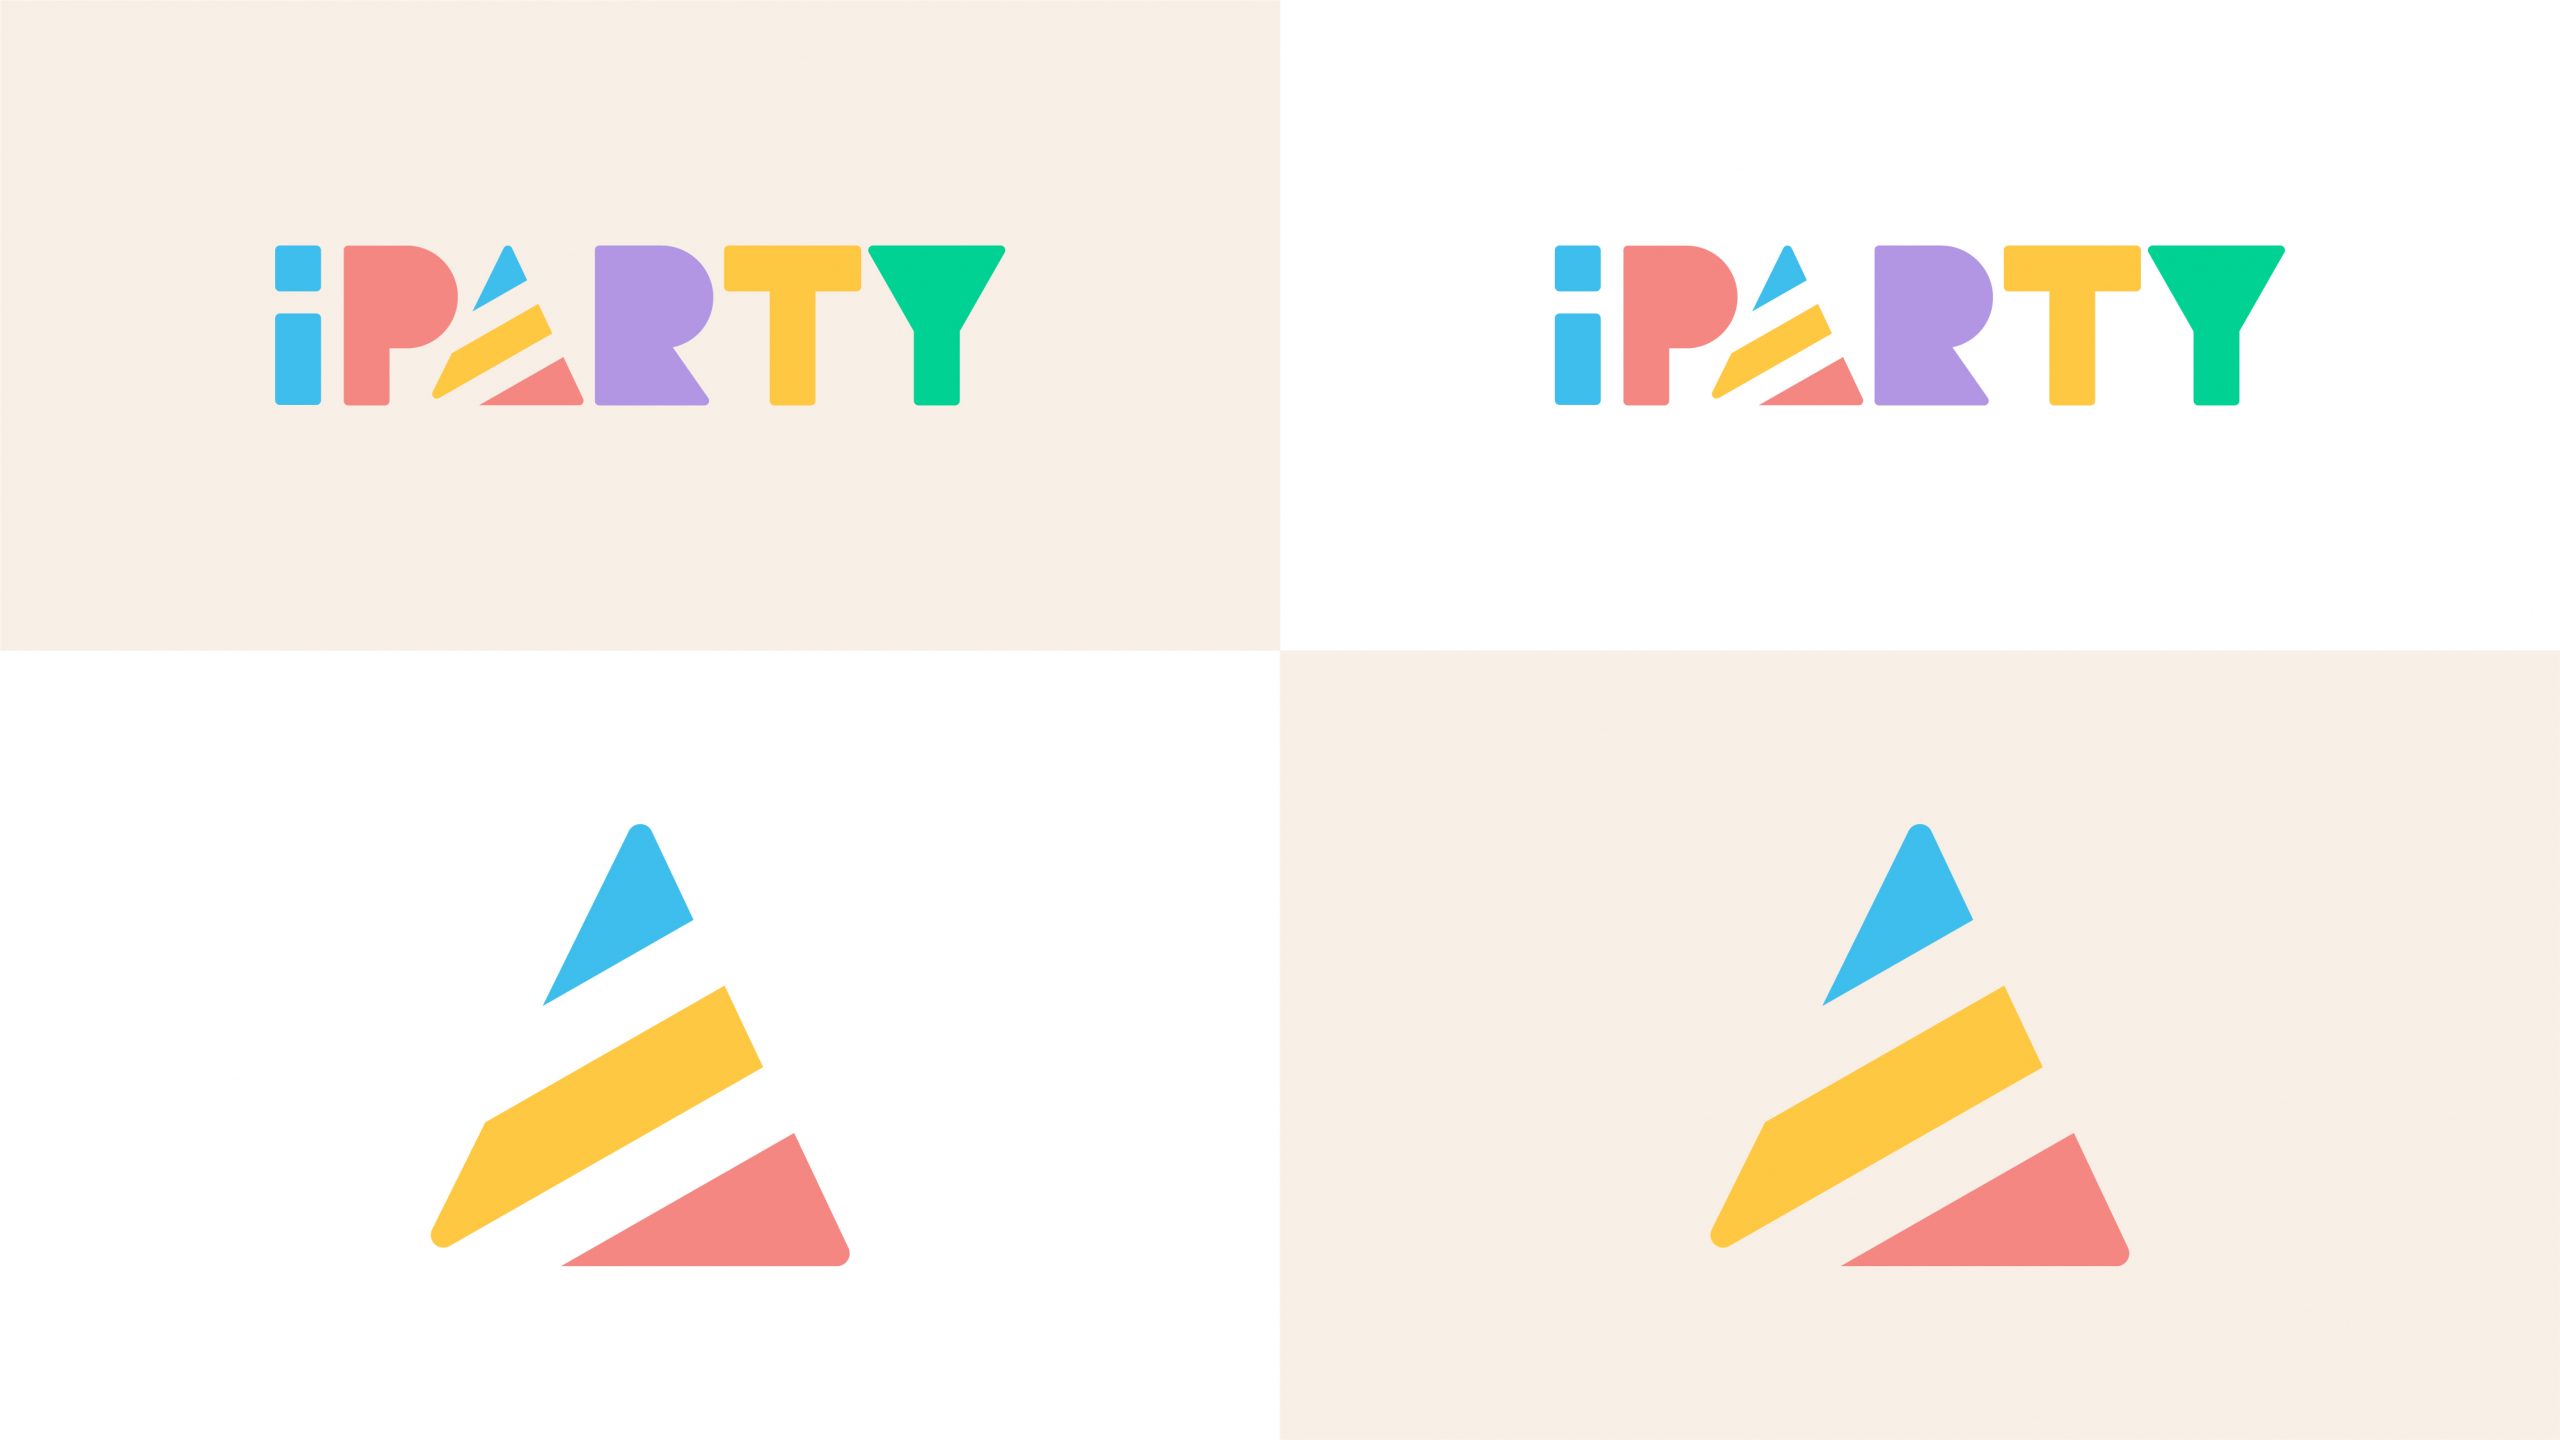 05_TFC-IPA-Portafolio-2021-Logo a color positivo y negativo 1920 x 1080